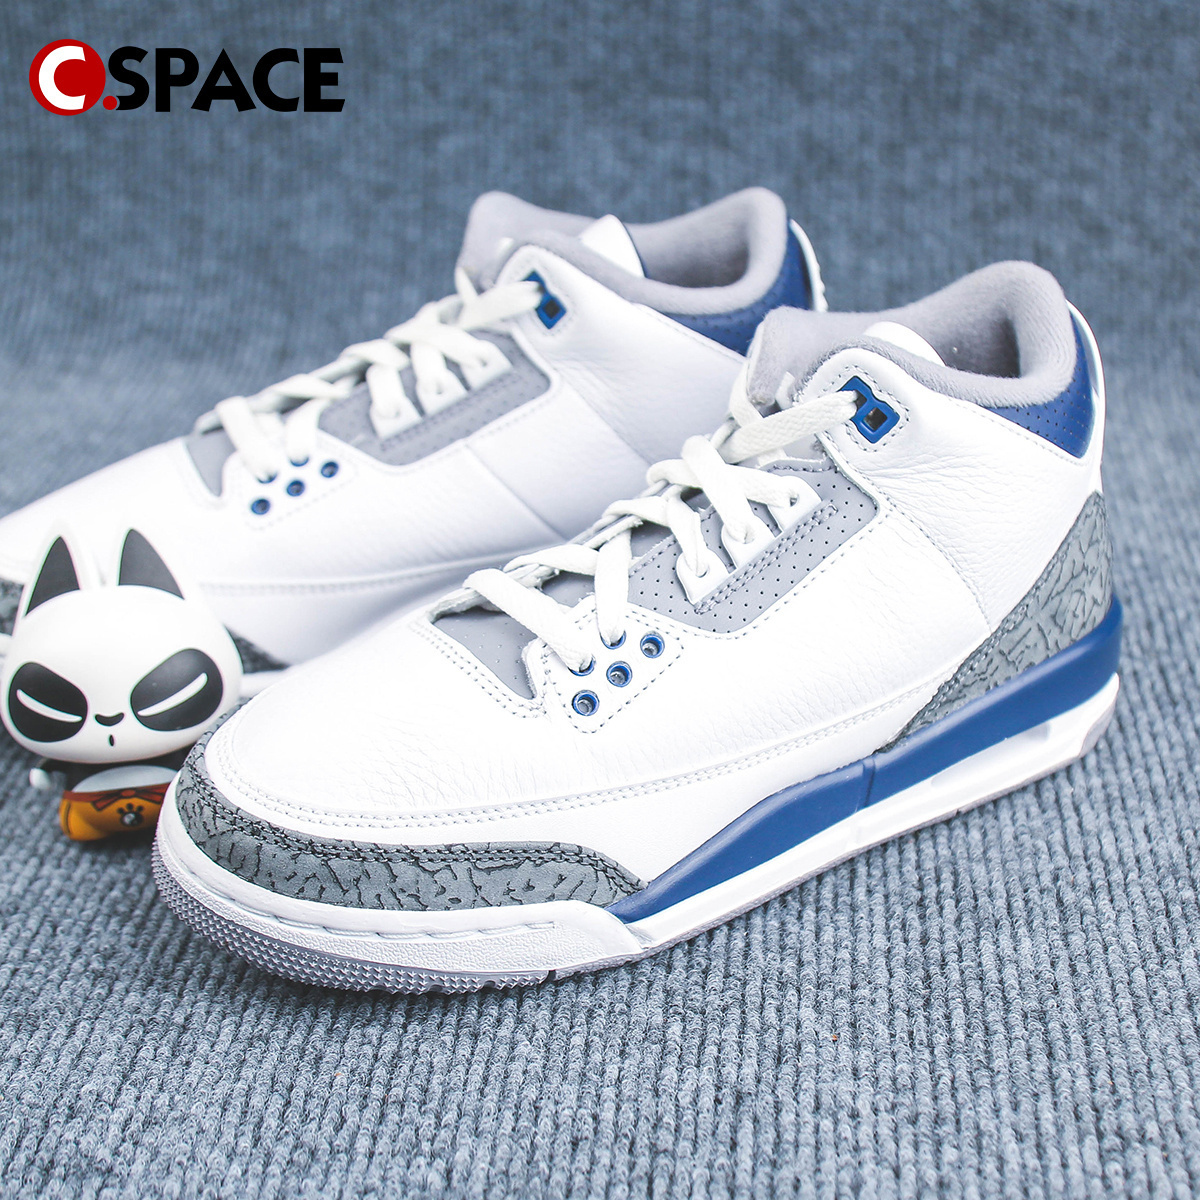 Cspace Air Jordan 3 Retro AJ3白色大童舒适低帮板鞋 DM0967-140 运动鞋new 板鞋 原图主图